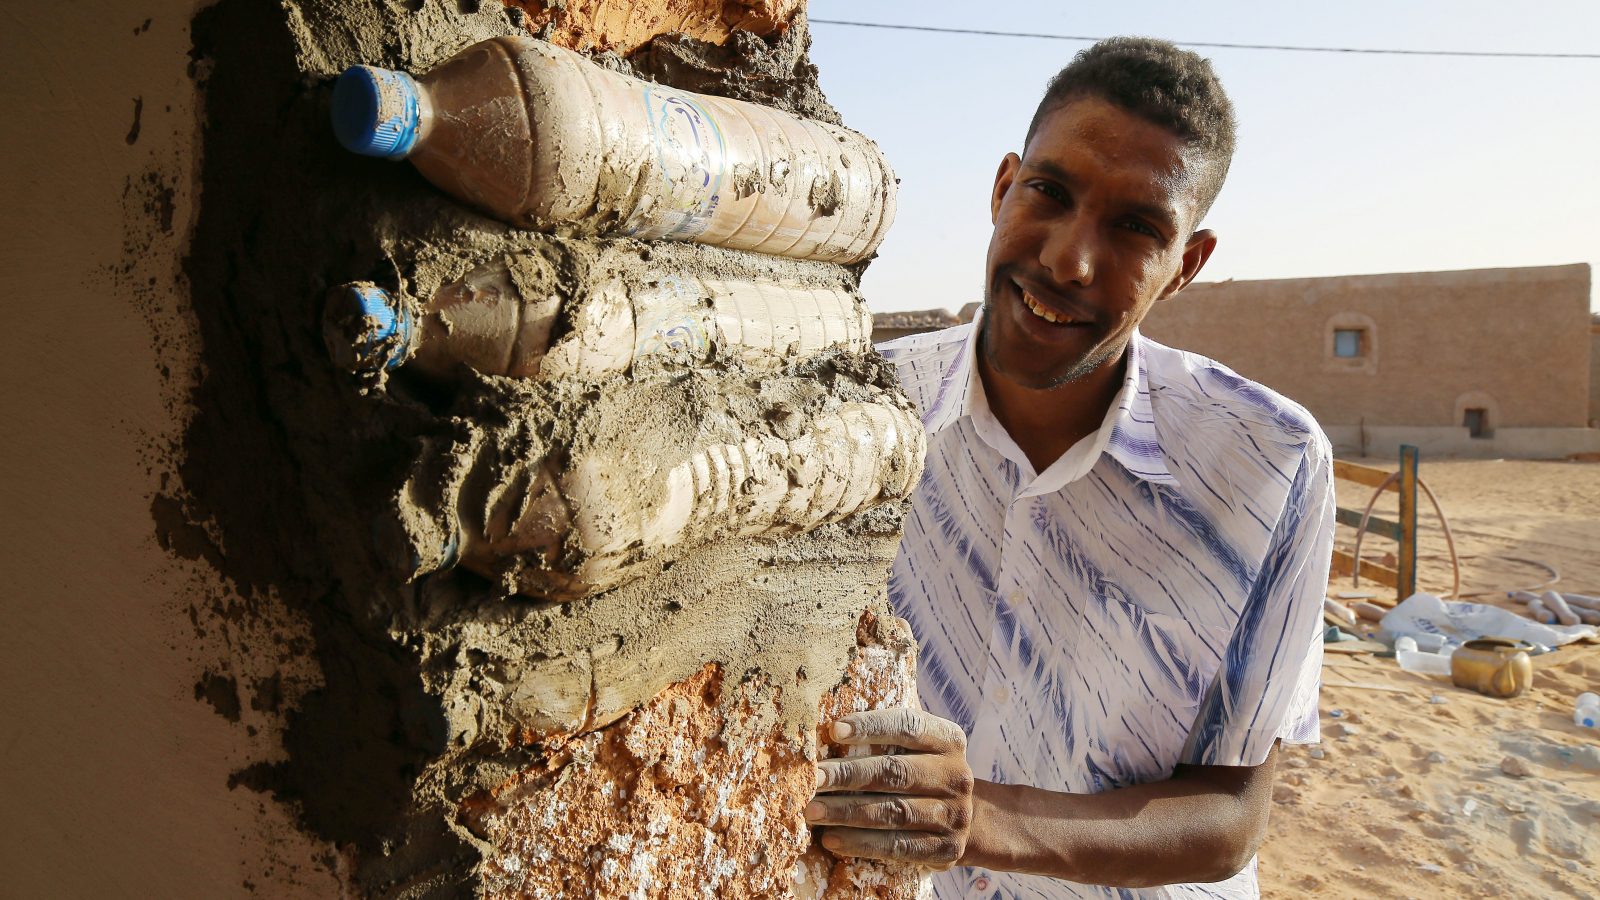 Tateh Lehbib montre comment construire une maison écologique à partir de bouteilles en plastique usagées remplies de sable. Les maisons circulaires construites dans le camp de réfugiés de Tindouf résistent au vent et aux fortes pluies et permettent de se protéger efficacement du rude climat qui caractérise le désert algérien.